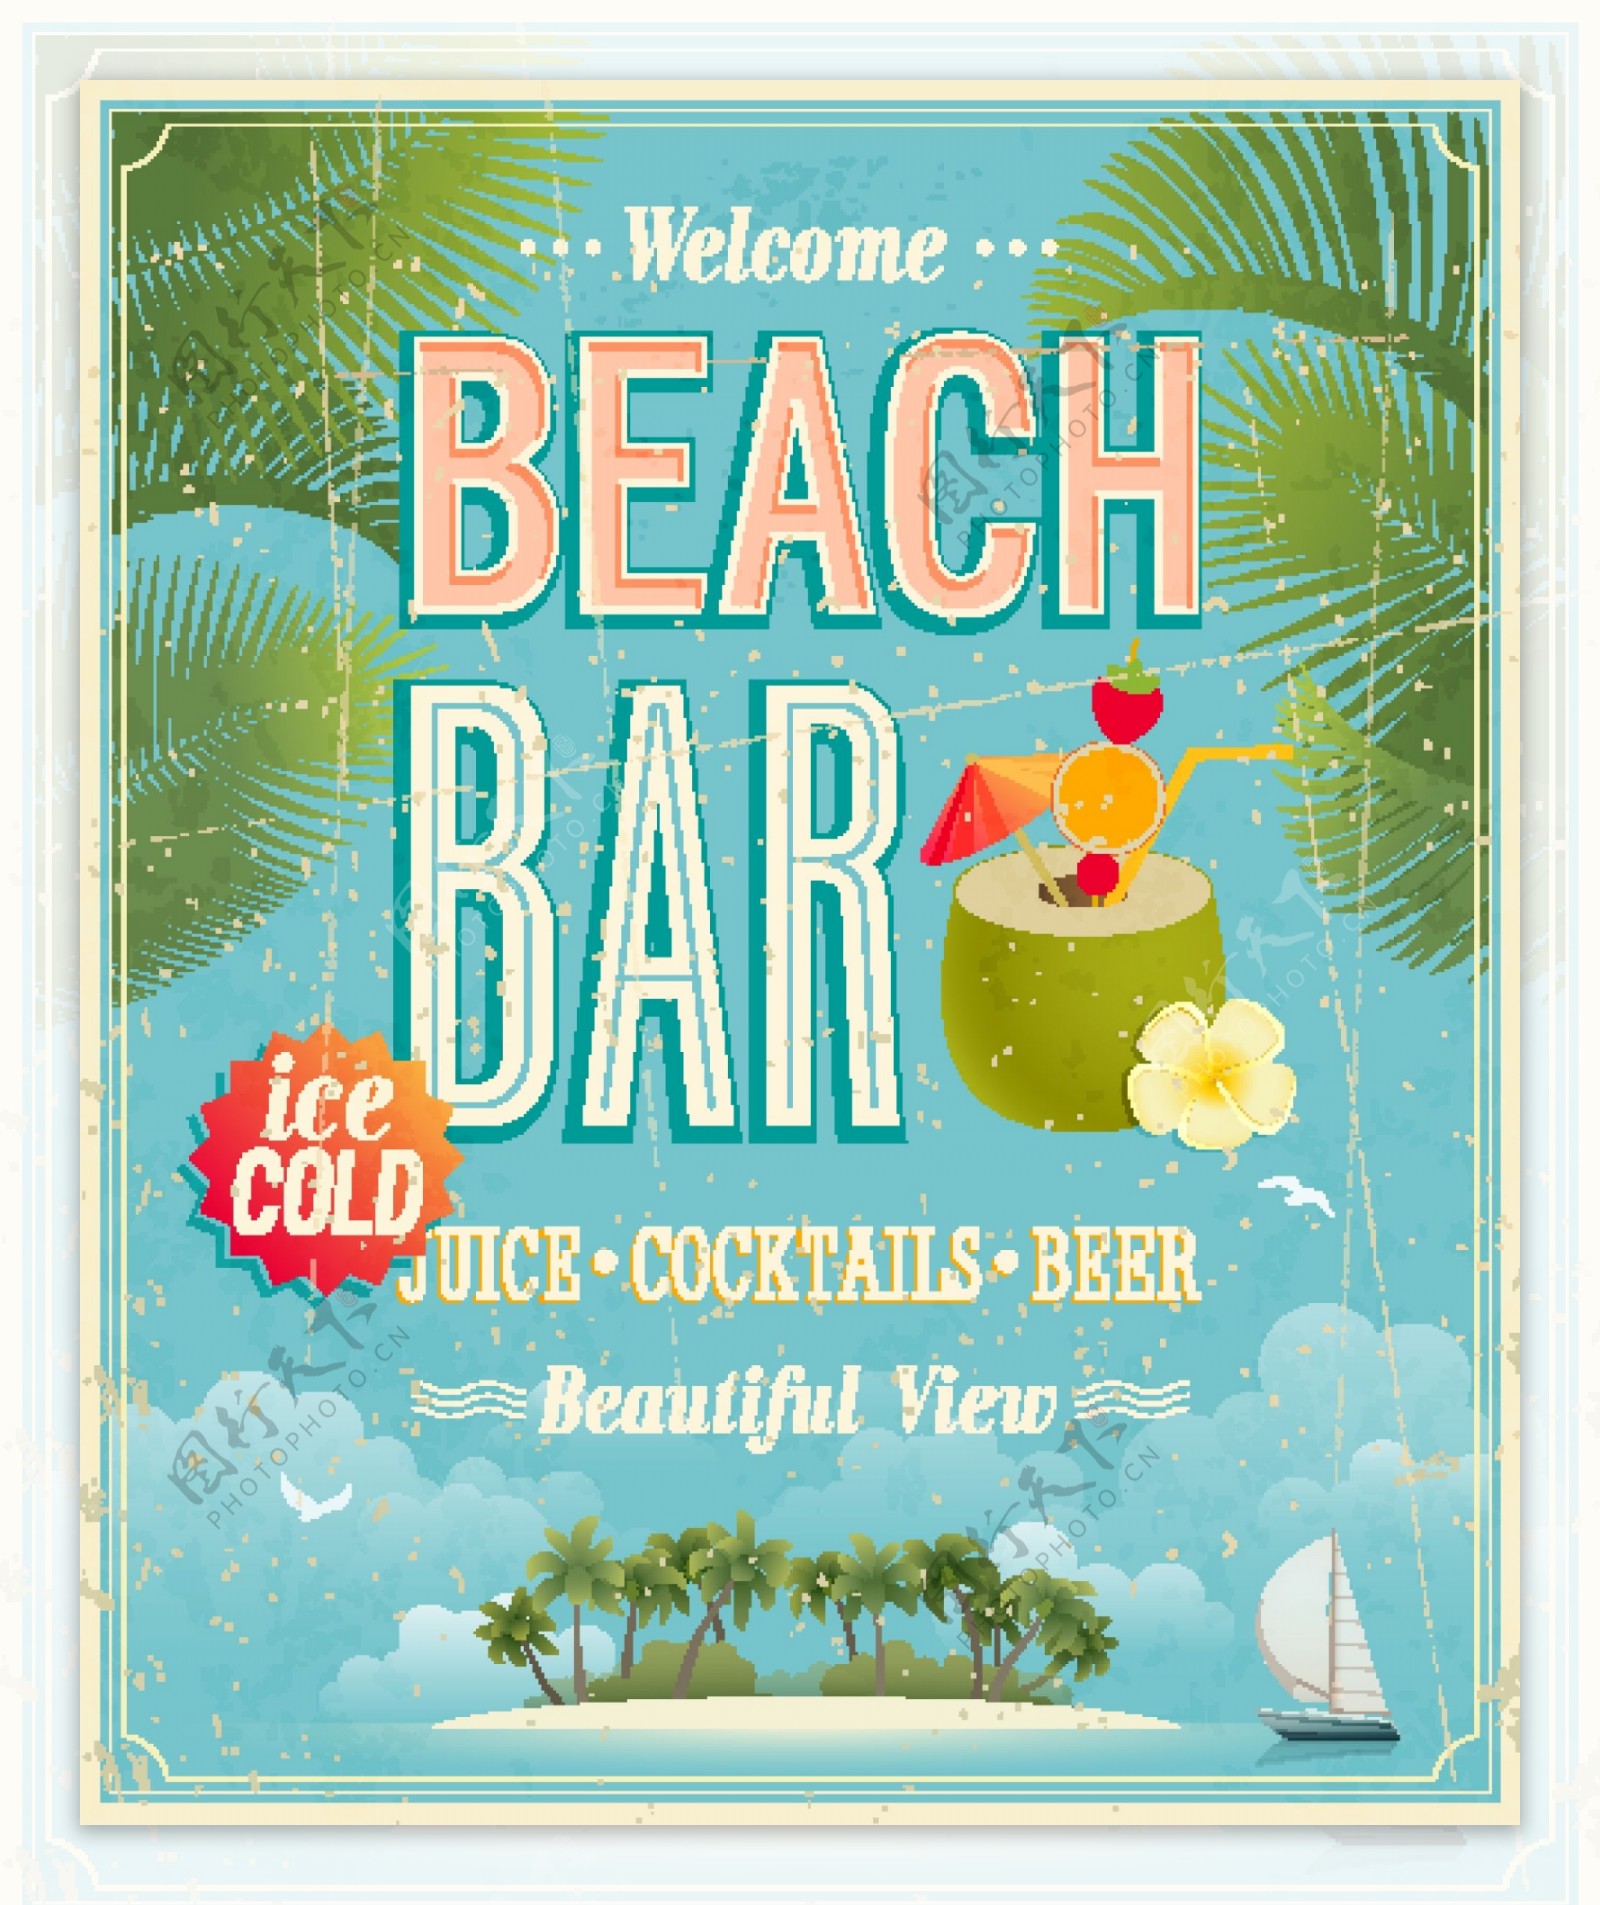 经典的海滩酒吧海报矢量素材01